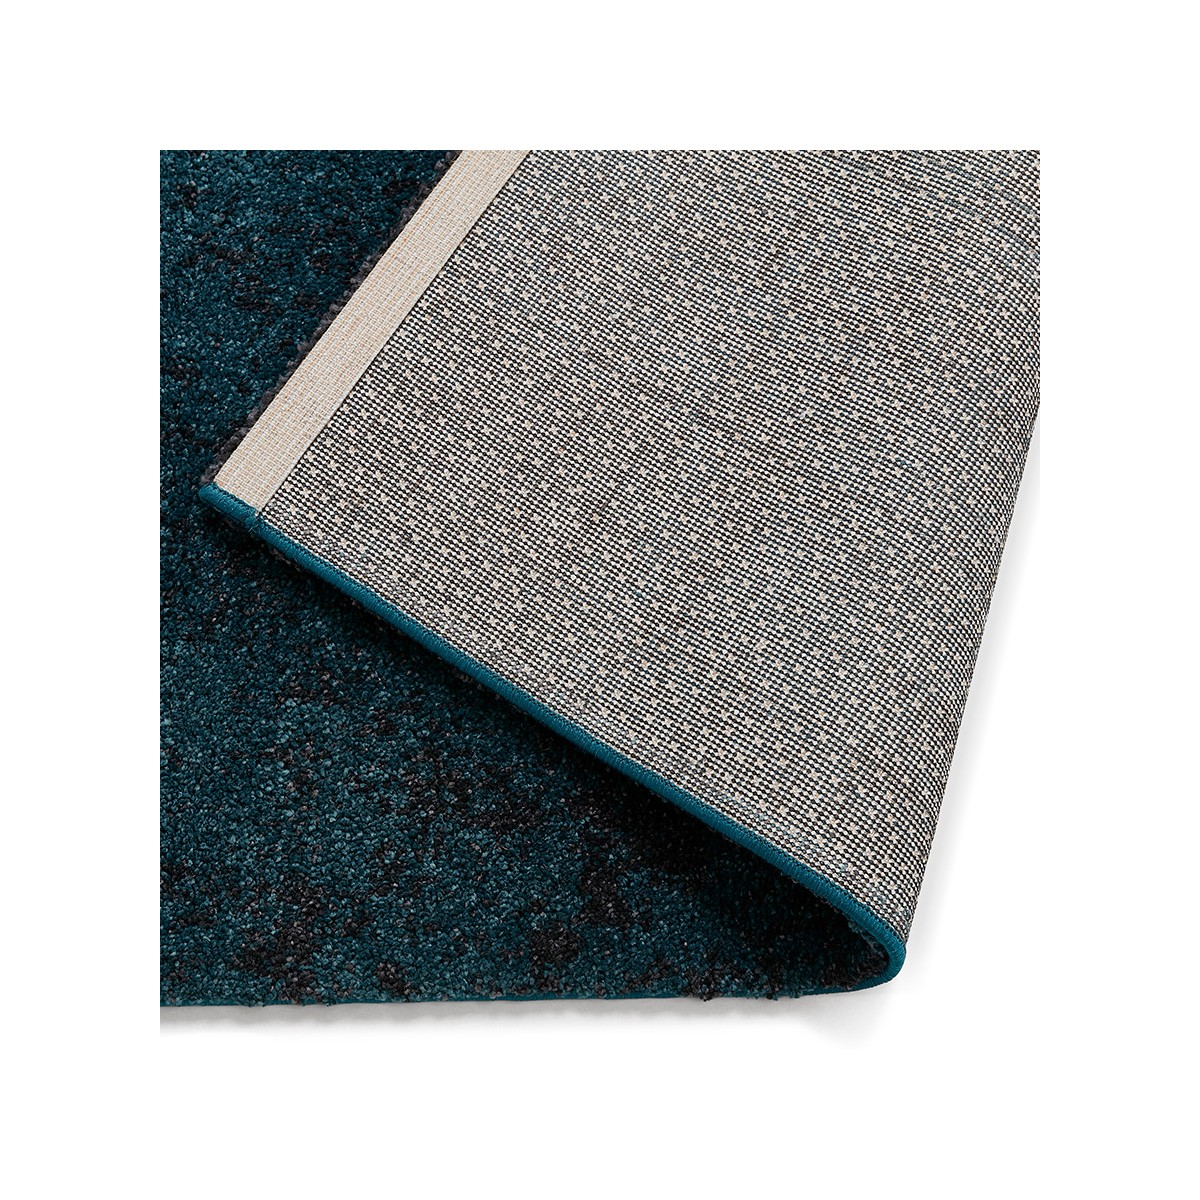 Super confortevole e accogliente blu e nero design tappeto rettangolare.